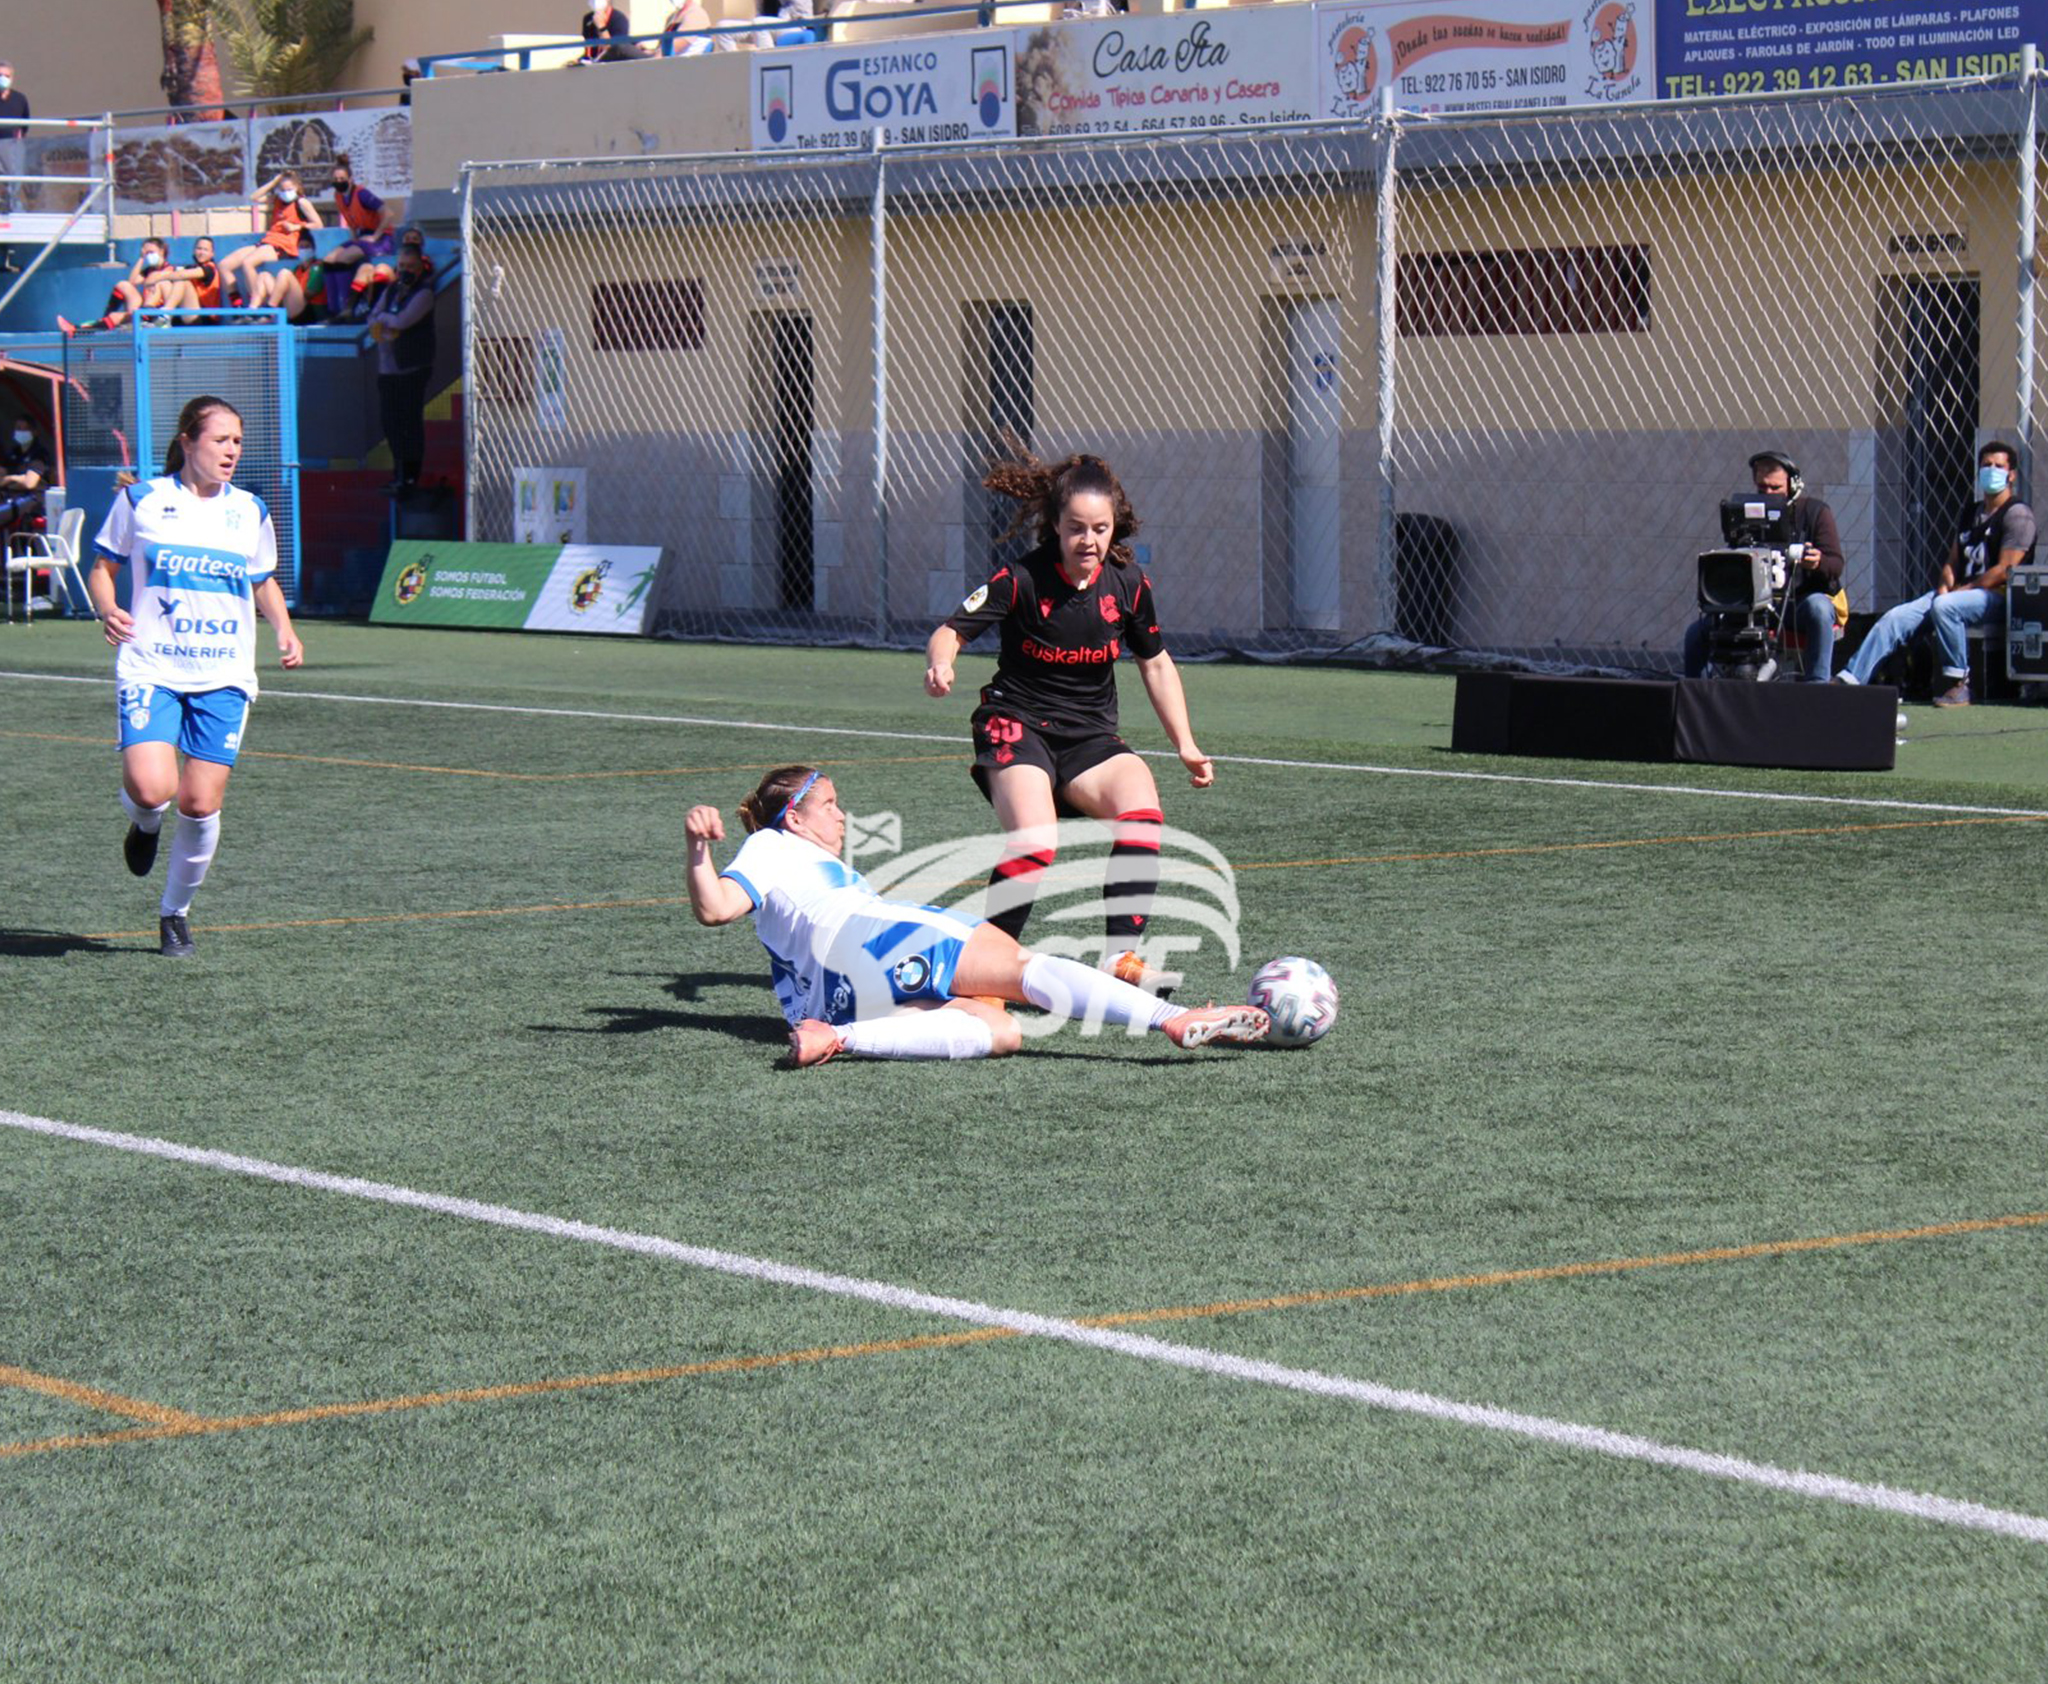 Crónica del UDG Tenerife 1-2 Real Sociedad: "Las guerreras ceden ante la efectividad donostiarra"